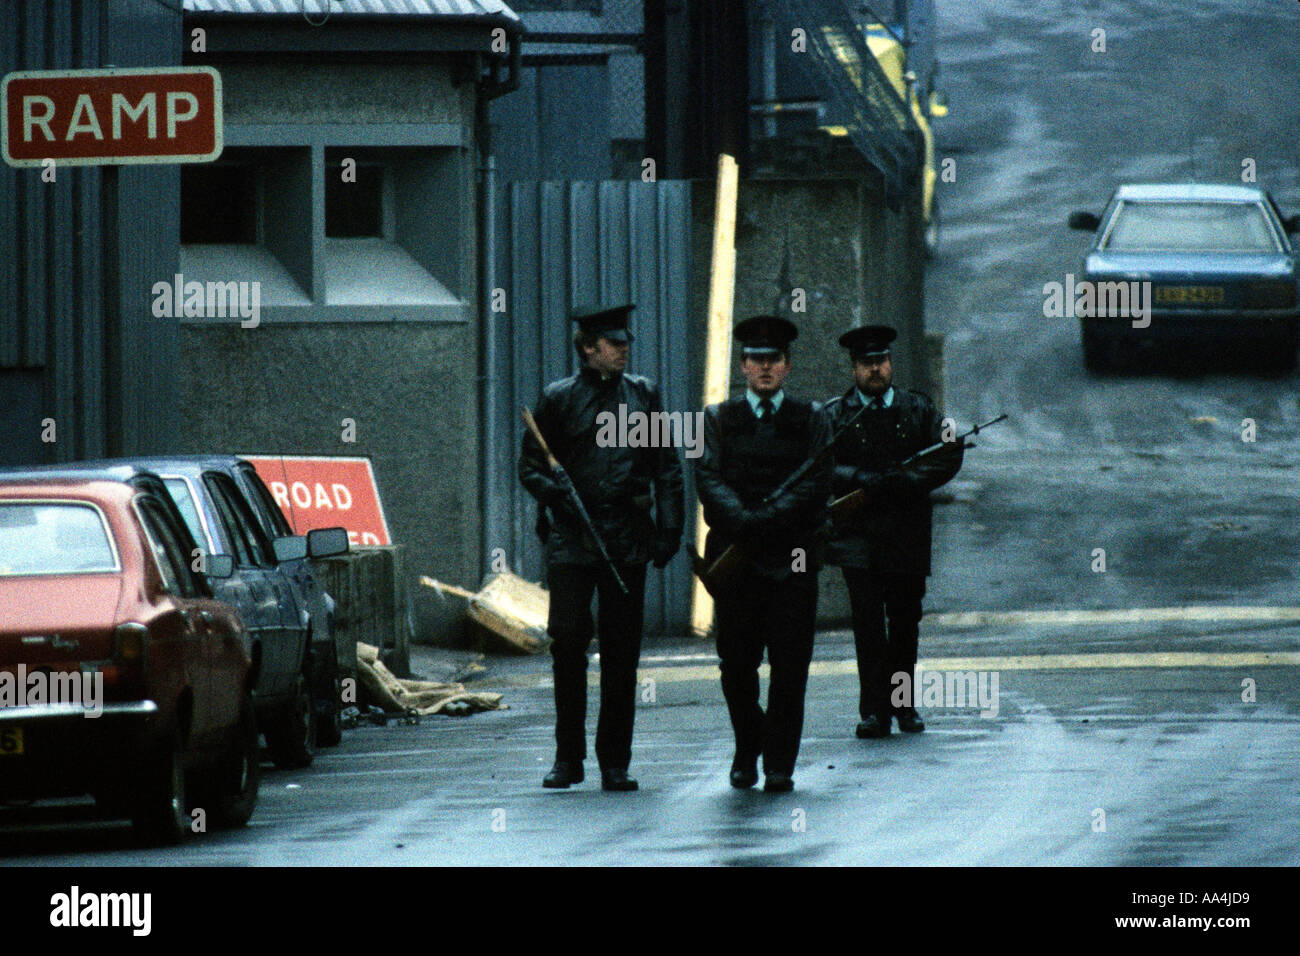 NEWRY BOMBARDAMENTO IRLANDA DEL NORD 28 FEB 1985. RUC nove poliziotti sono morti quando l'IRA a Malta ha bombardato la loro stazione di polizia nel nuovo Foto Stock